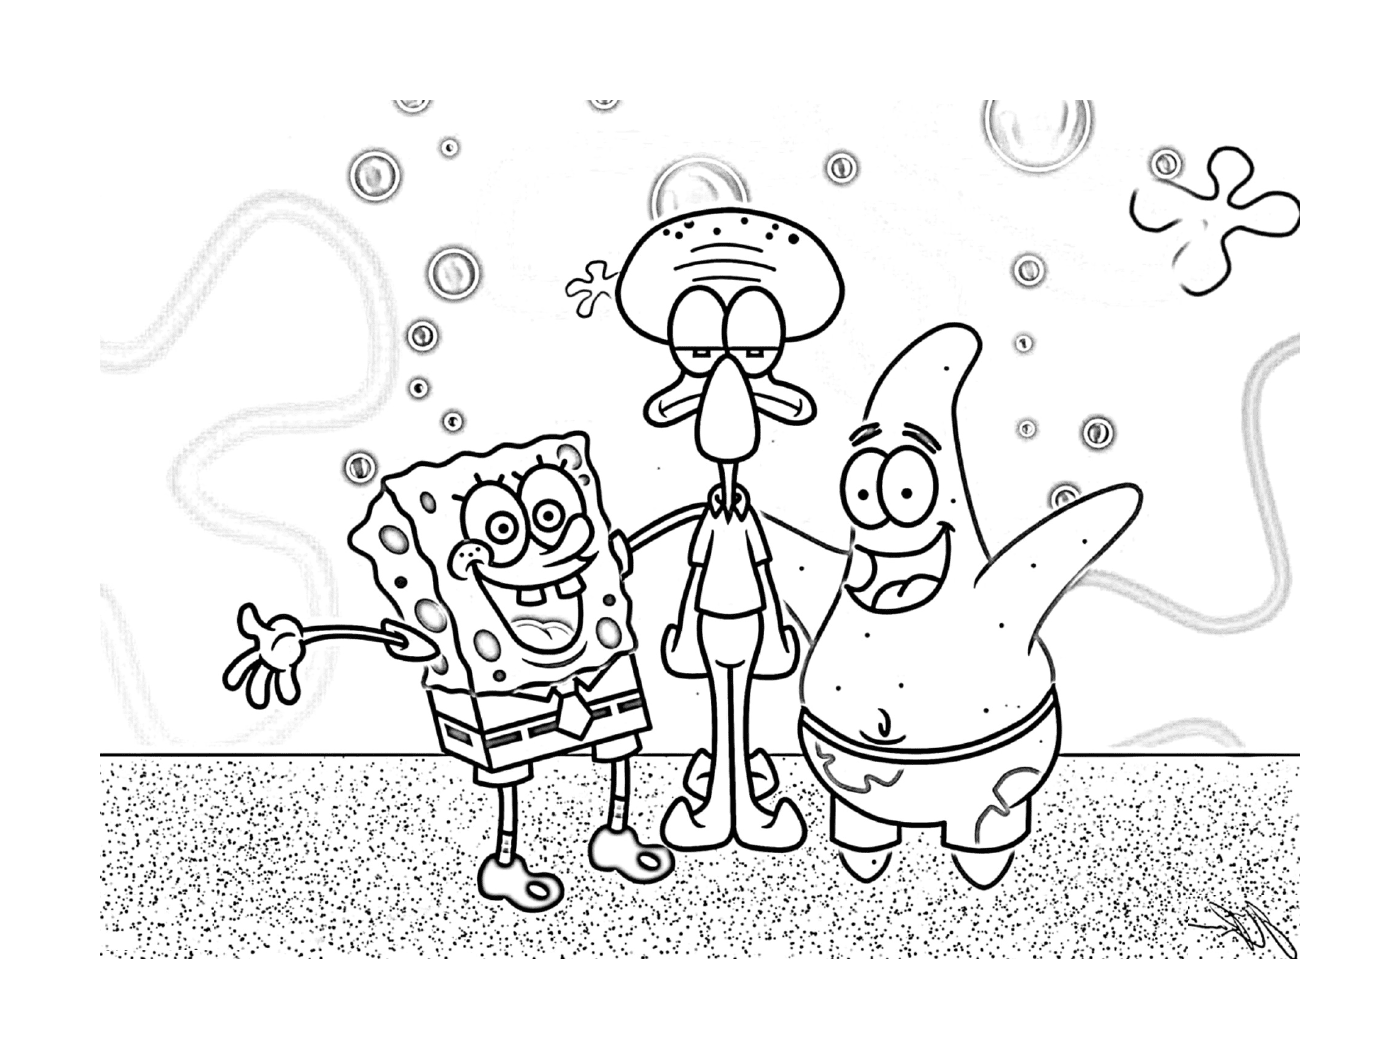  Spongebob und Patrick, eine glückliche Familie 